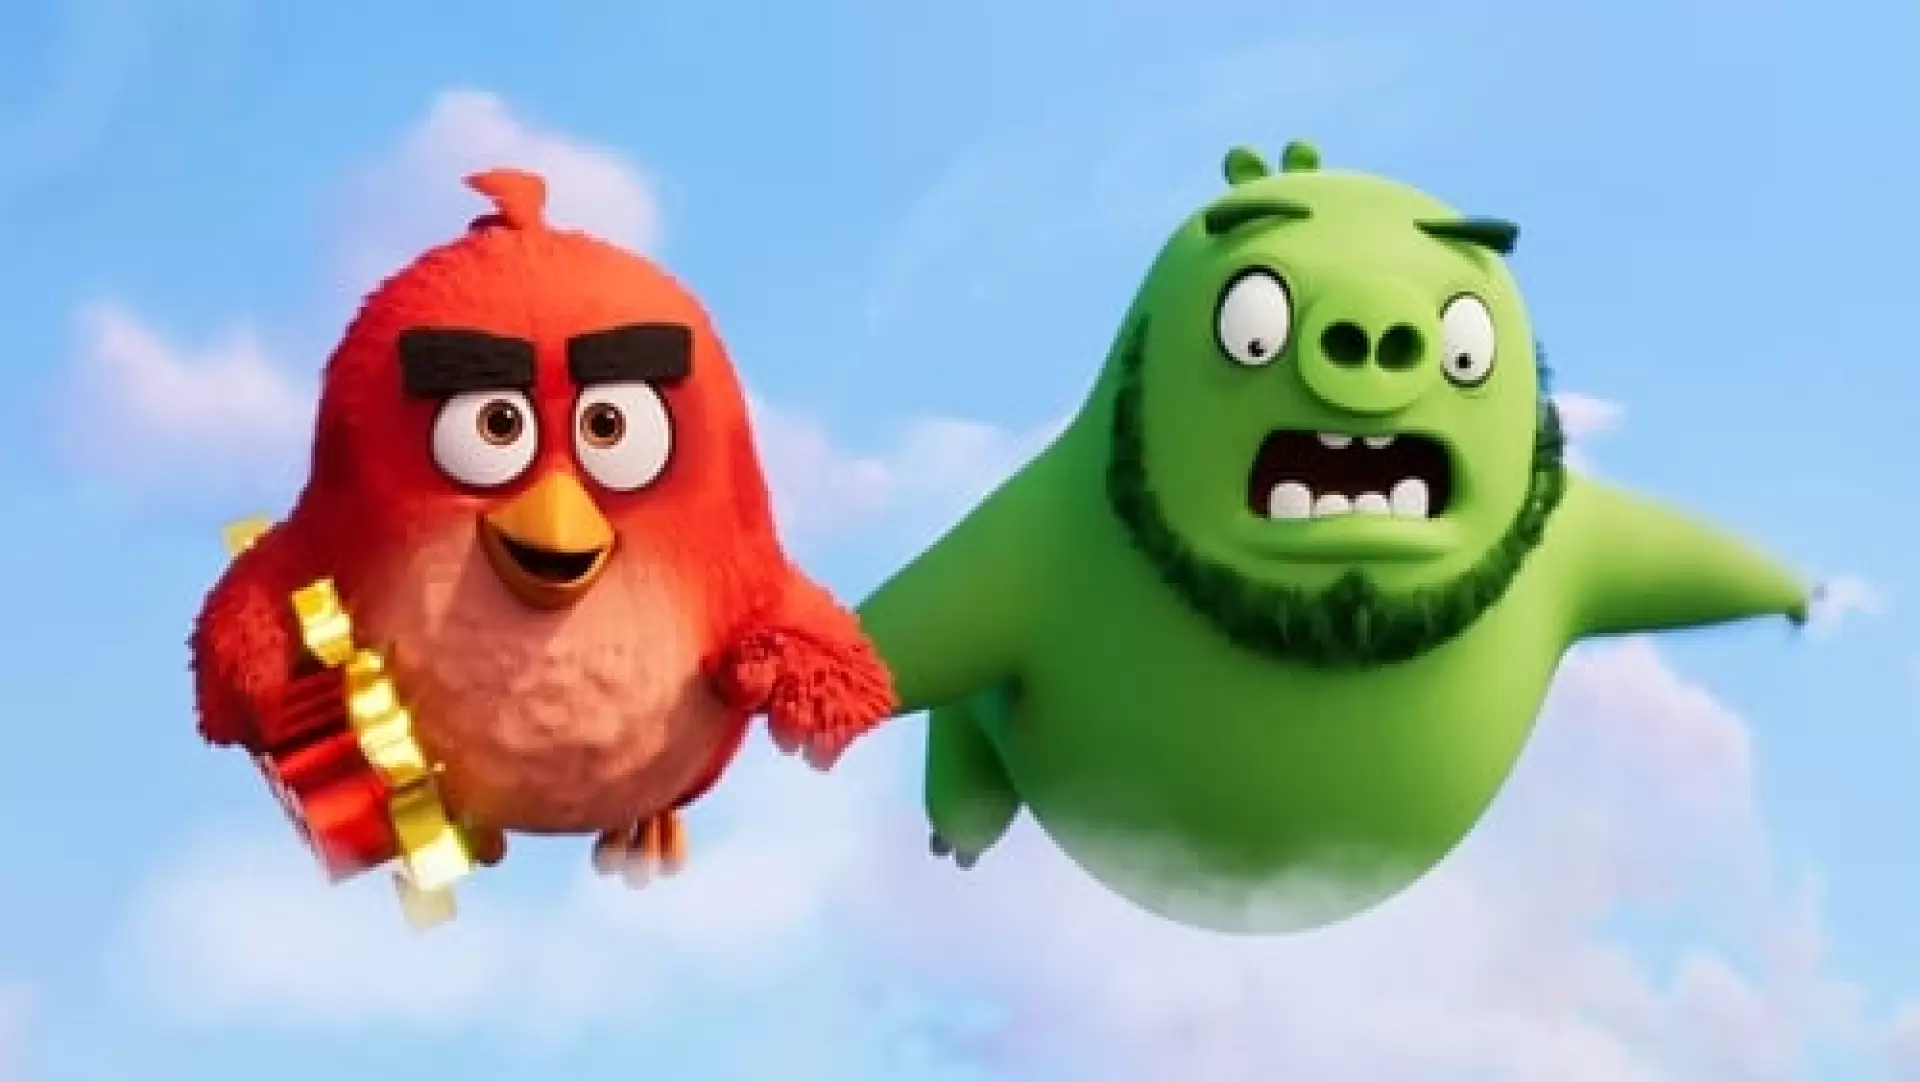 دانلود انیمیشن The Angry Birds Movie 2 2019 (فیلم پرندگان خشمگین ۲) با تماشای آنلاین